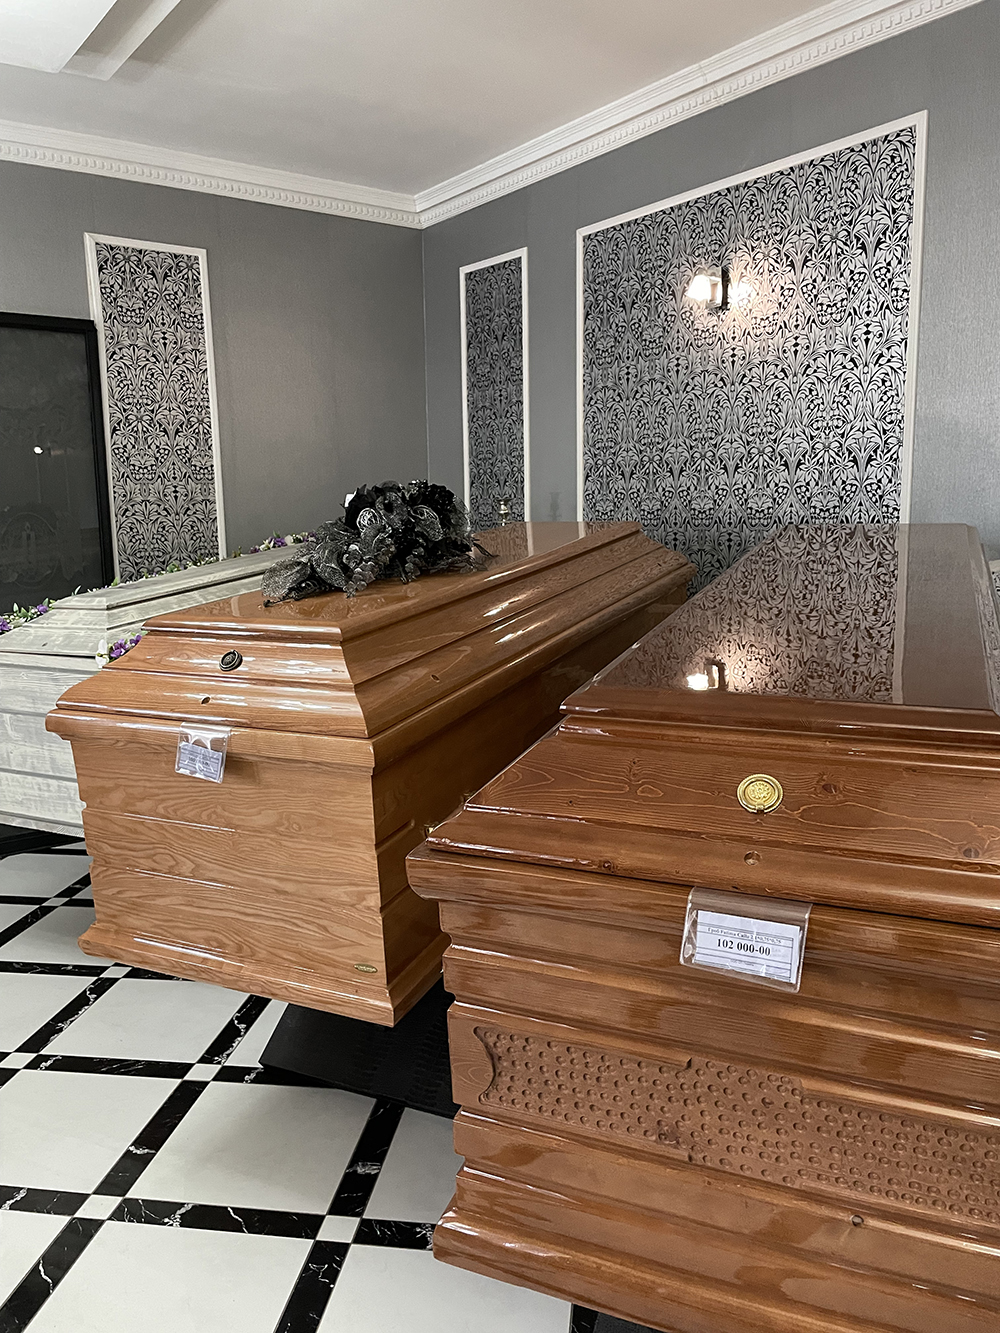 А это уже варианты дорогих гробов: коричневый слева стоит 100 000 ₽, справа — 102 000 ₽